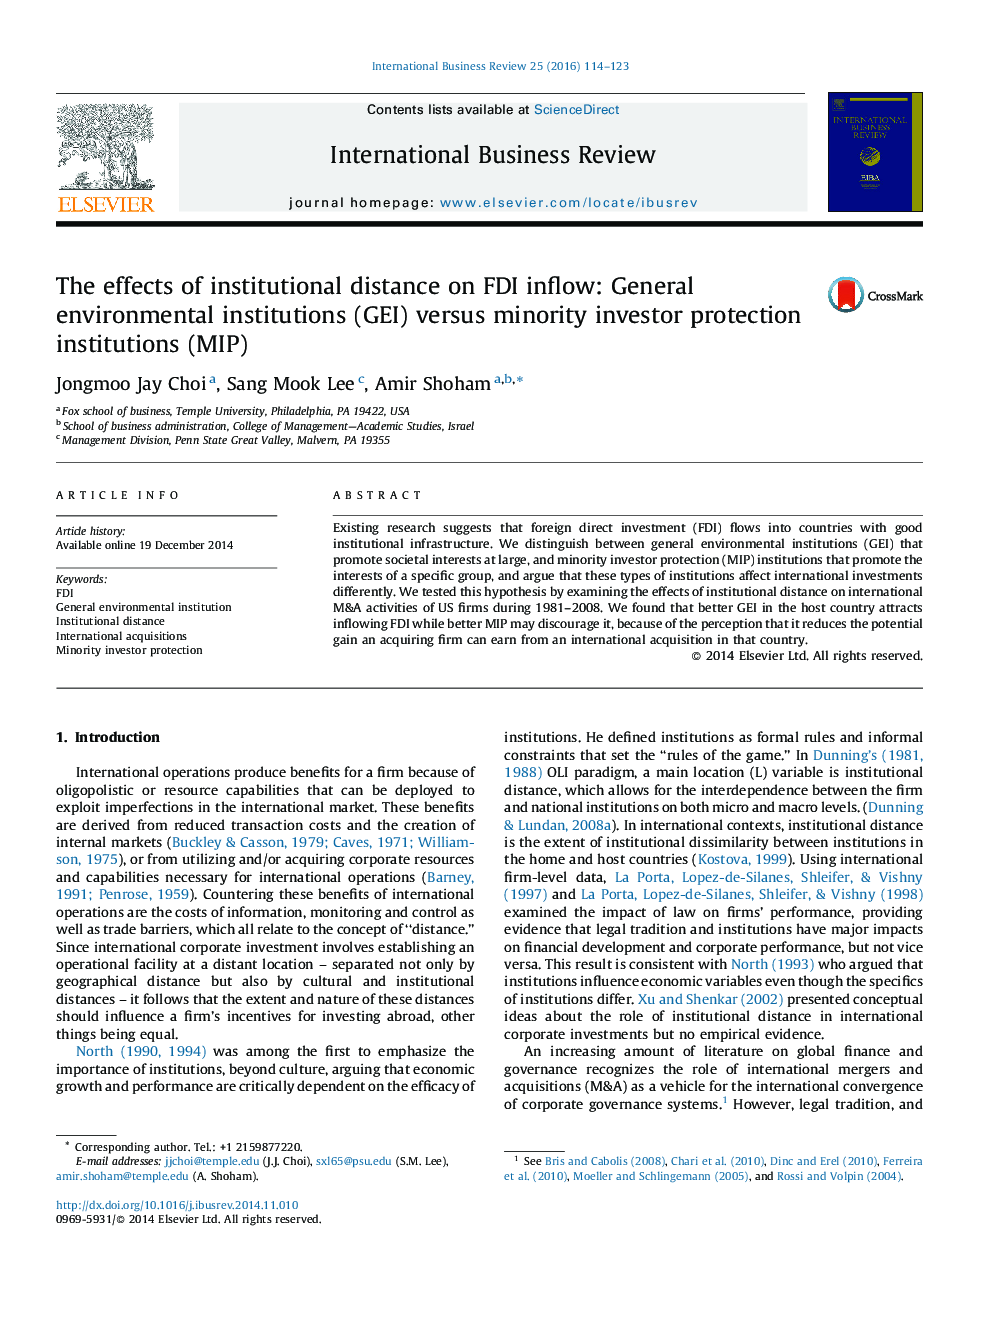 اثرات فاصله نهادی را در جریان سرمایه گذاری مستقیم خارجی: نهادهای عمومی محیطی (GEI) در برابر نهادهای حفاظت اقلیت سرمایه گذار (MIP)